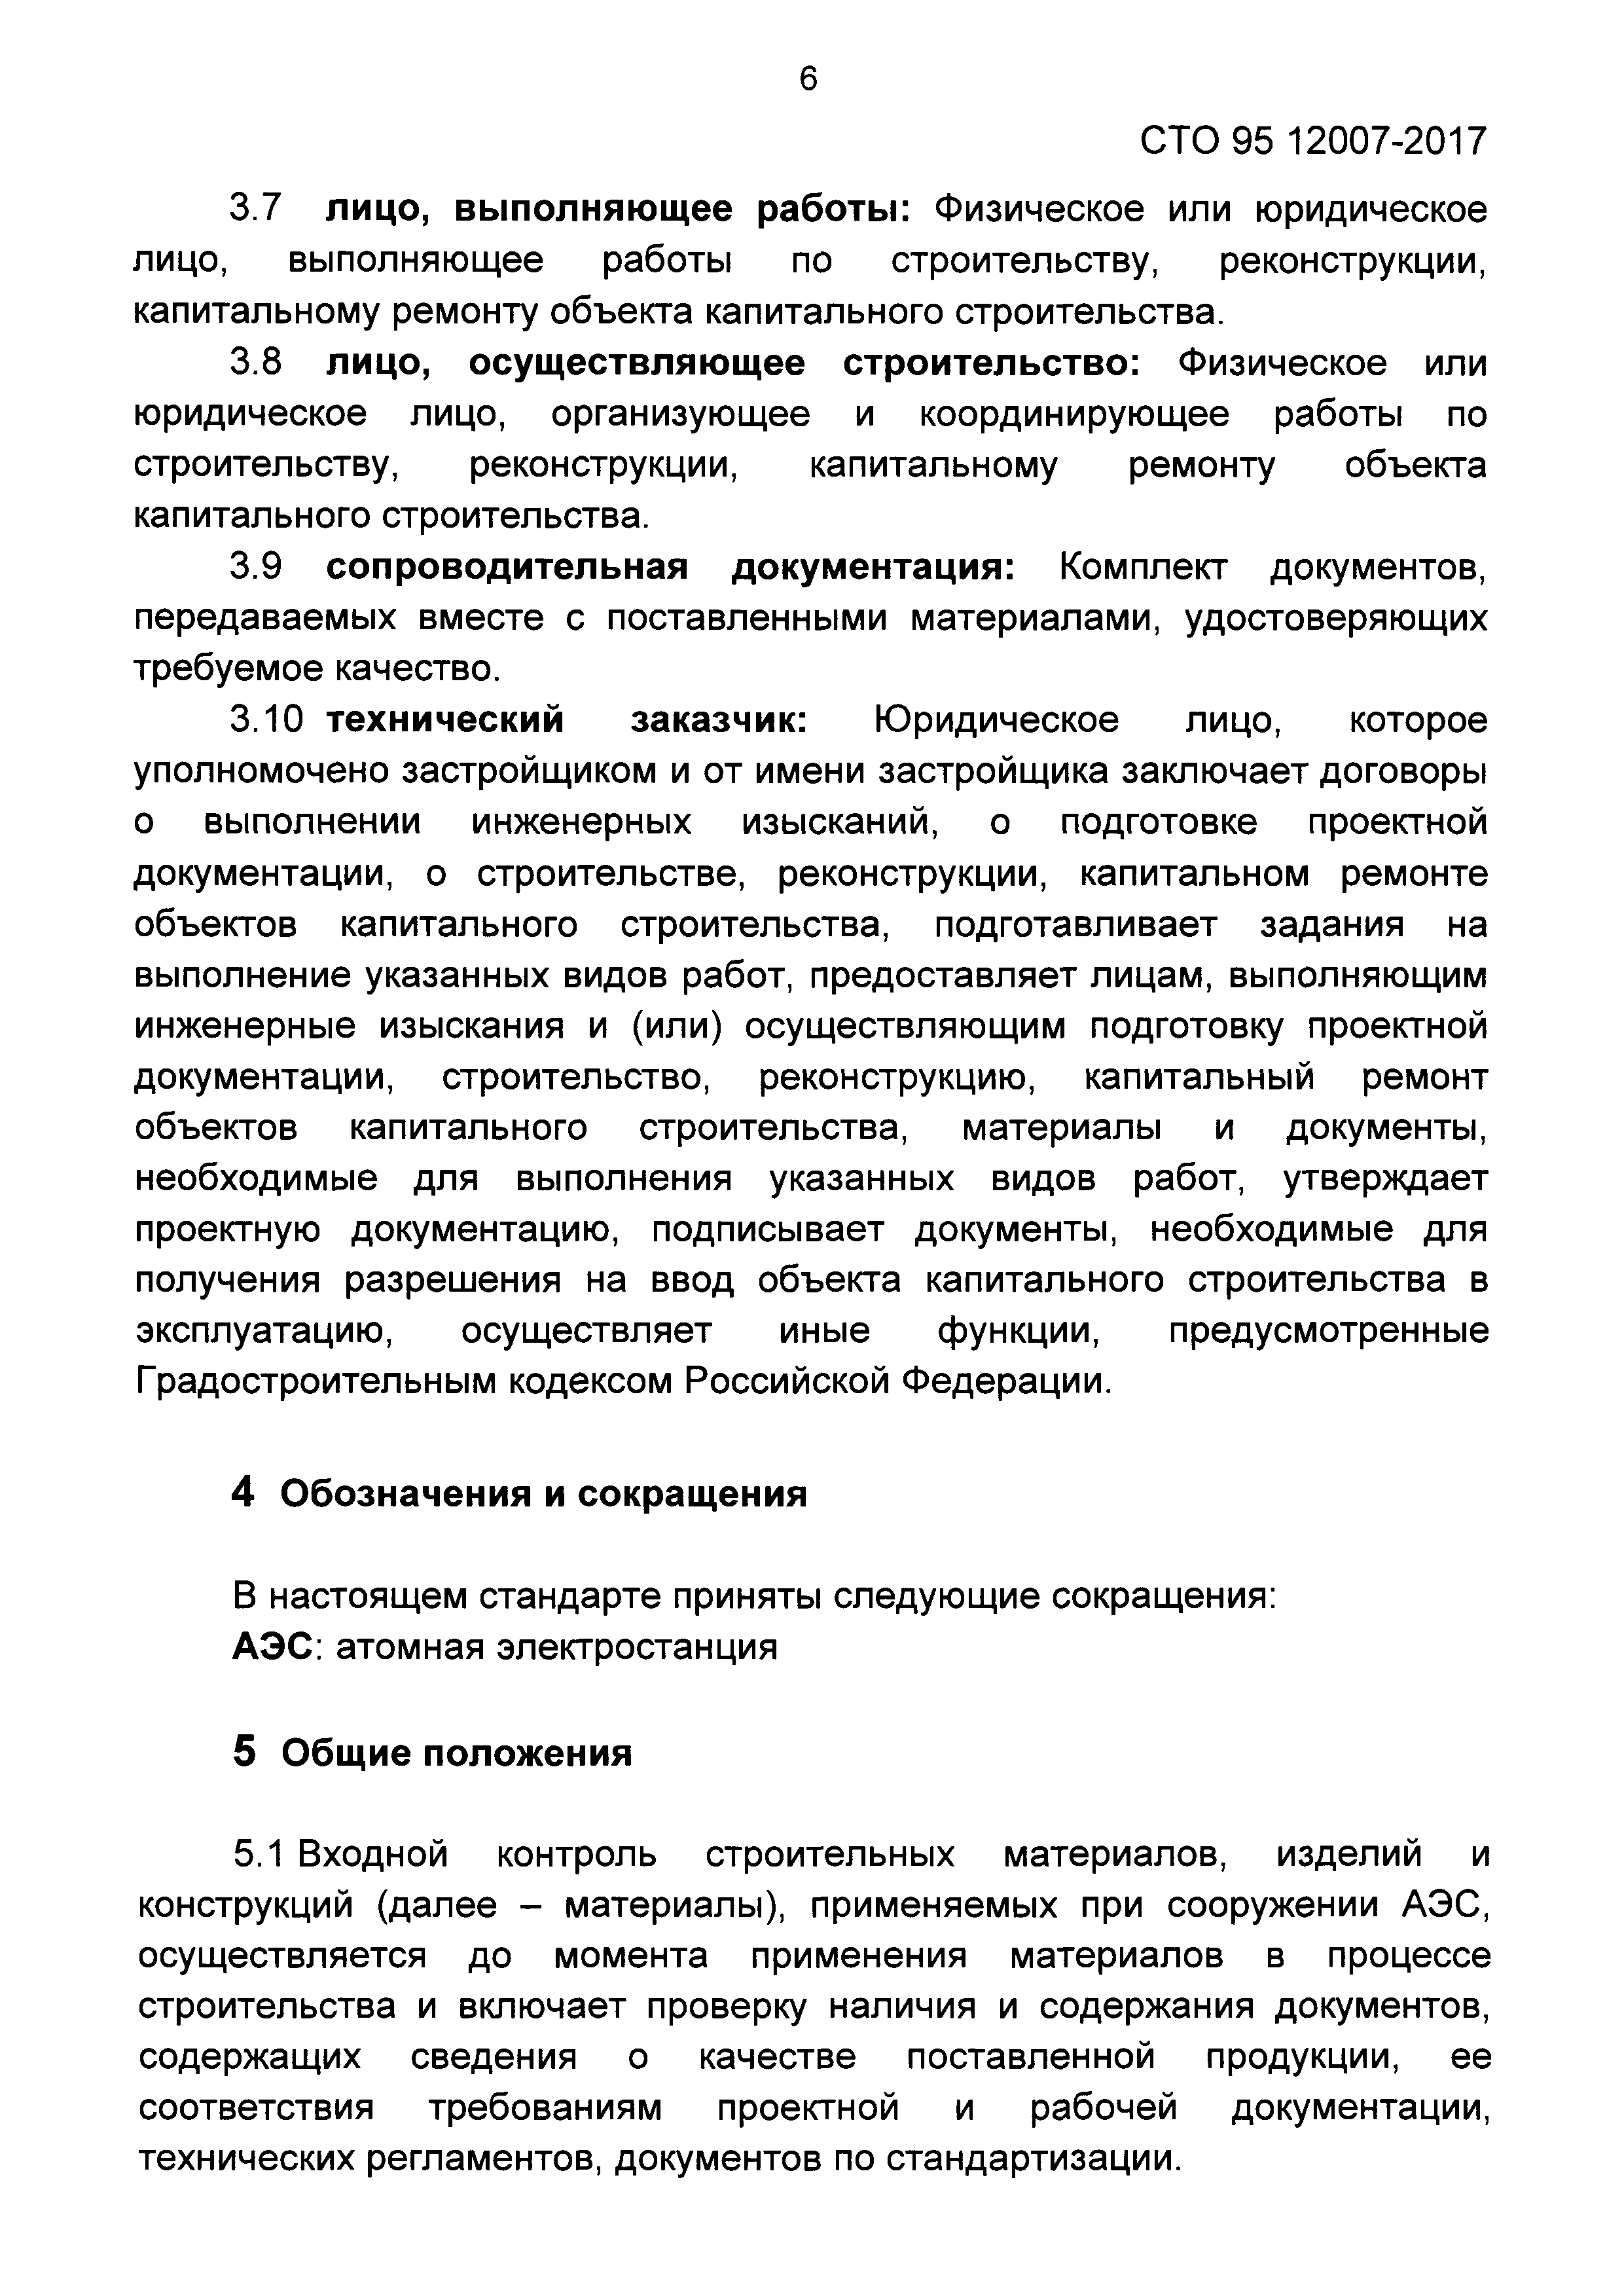 СТО 95 12007-2017